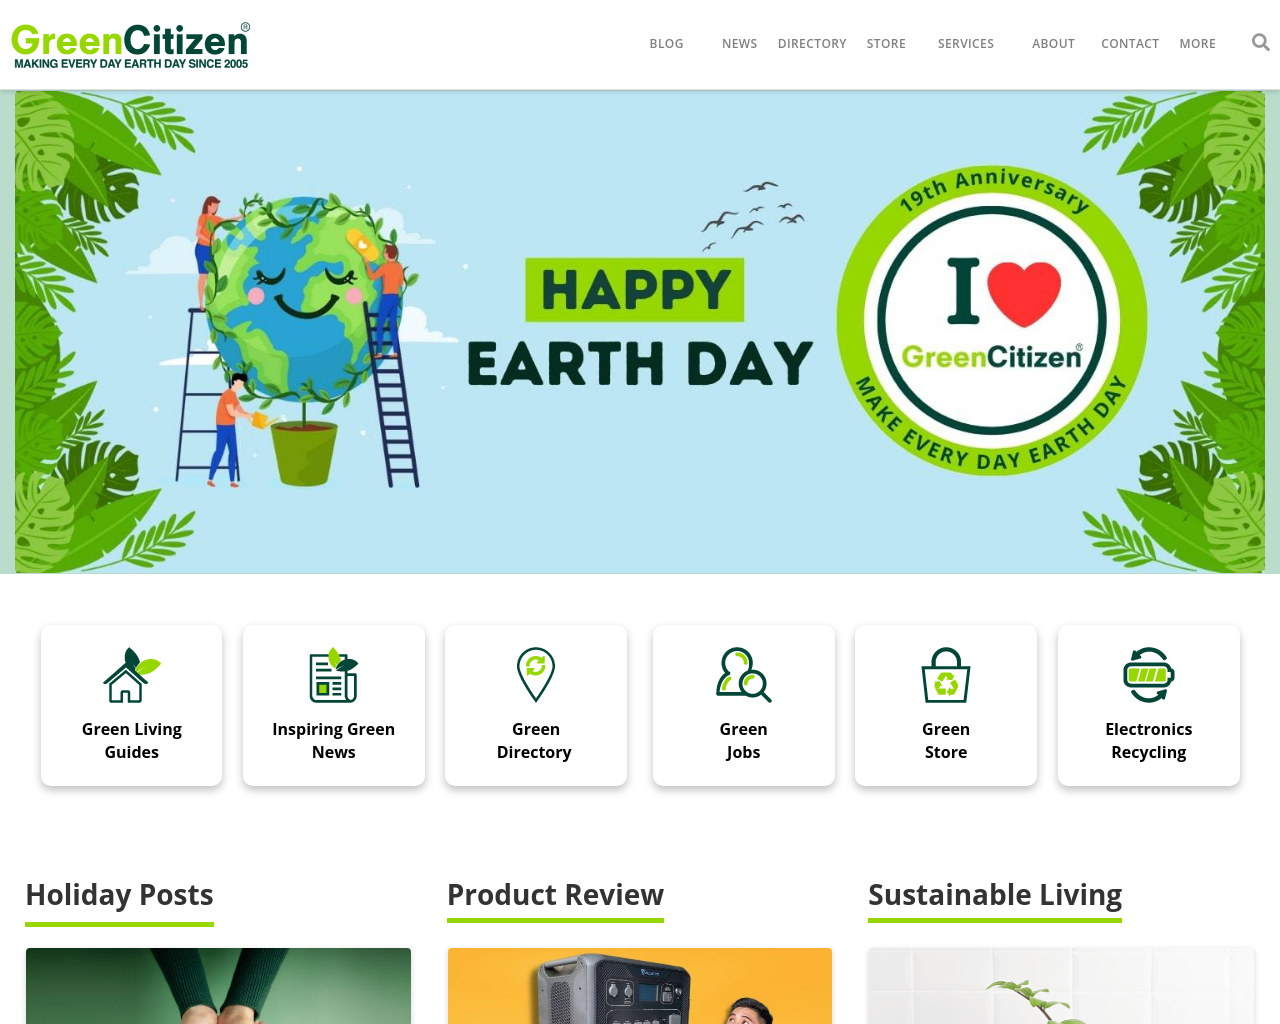 greencitizen.com